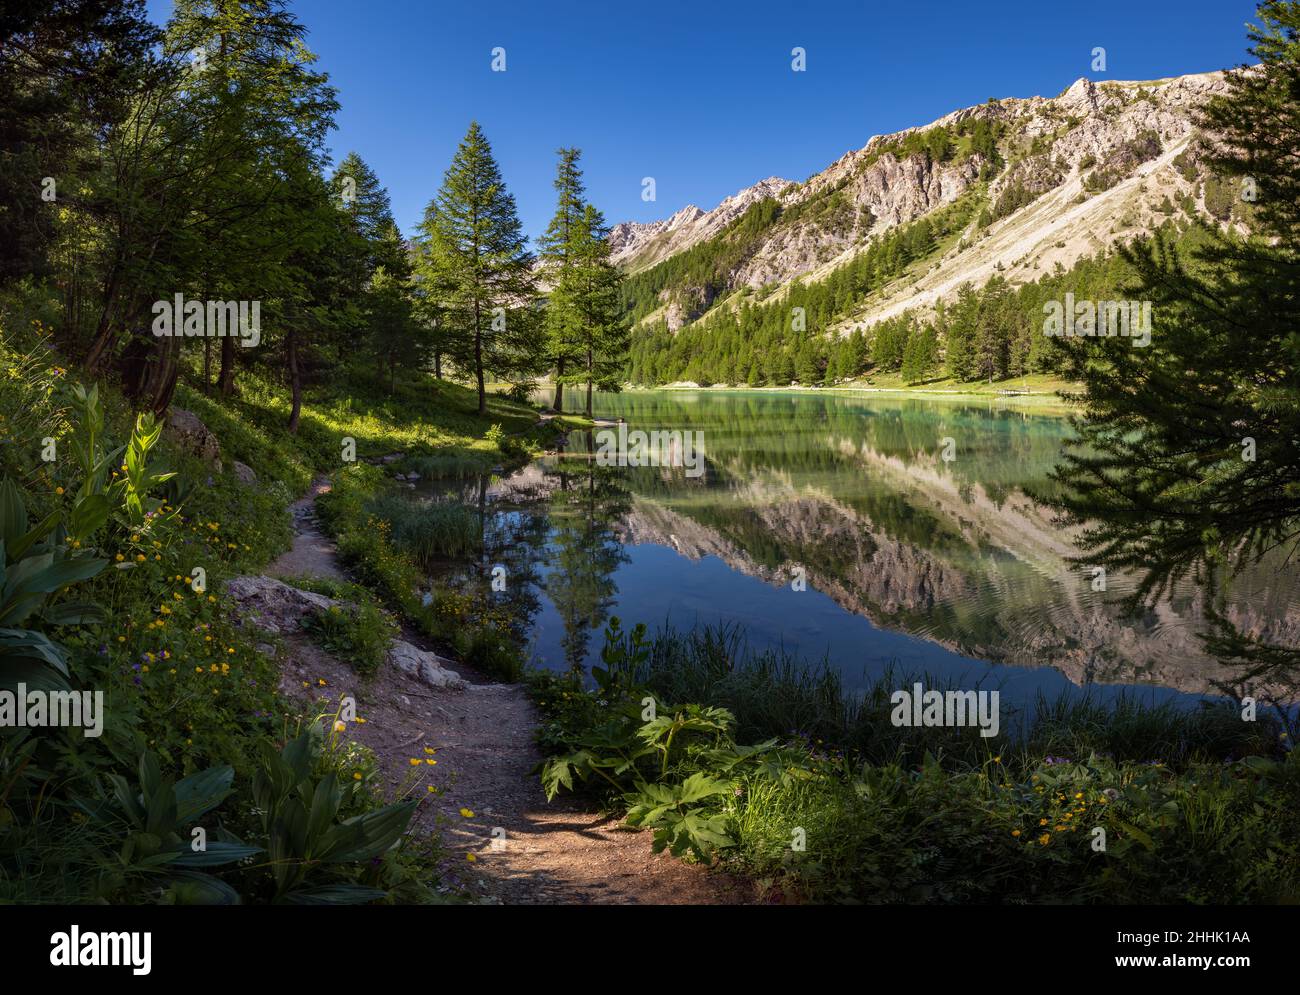 Lac Orceyrette en été avec forêt de mélèze.Région de Briançon dans les Hautes-Alpes.Alpes françaises du Sud, France Banque D'Images